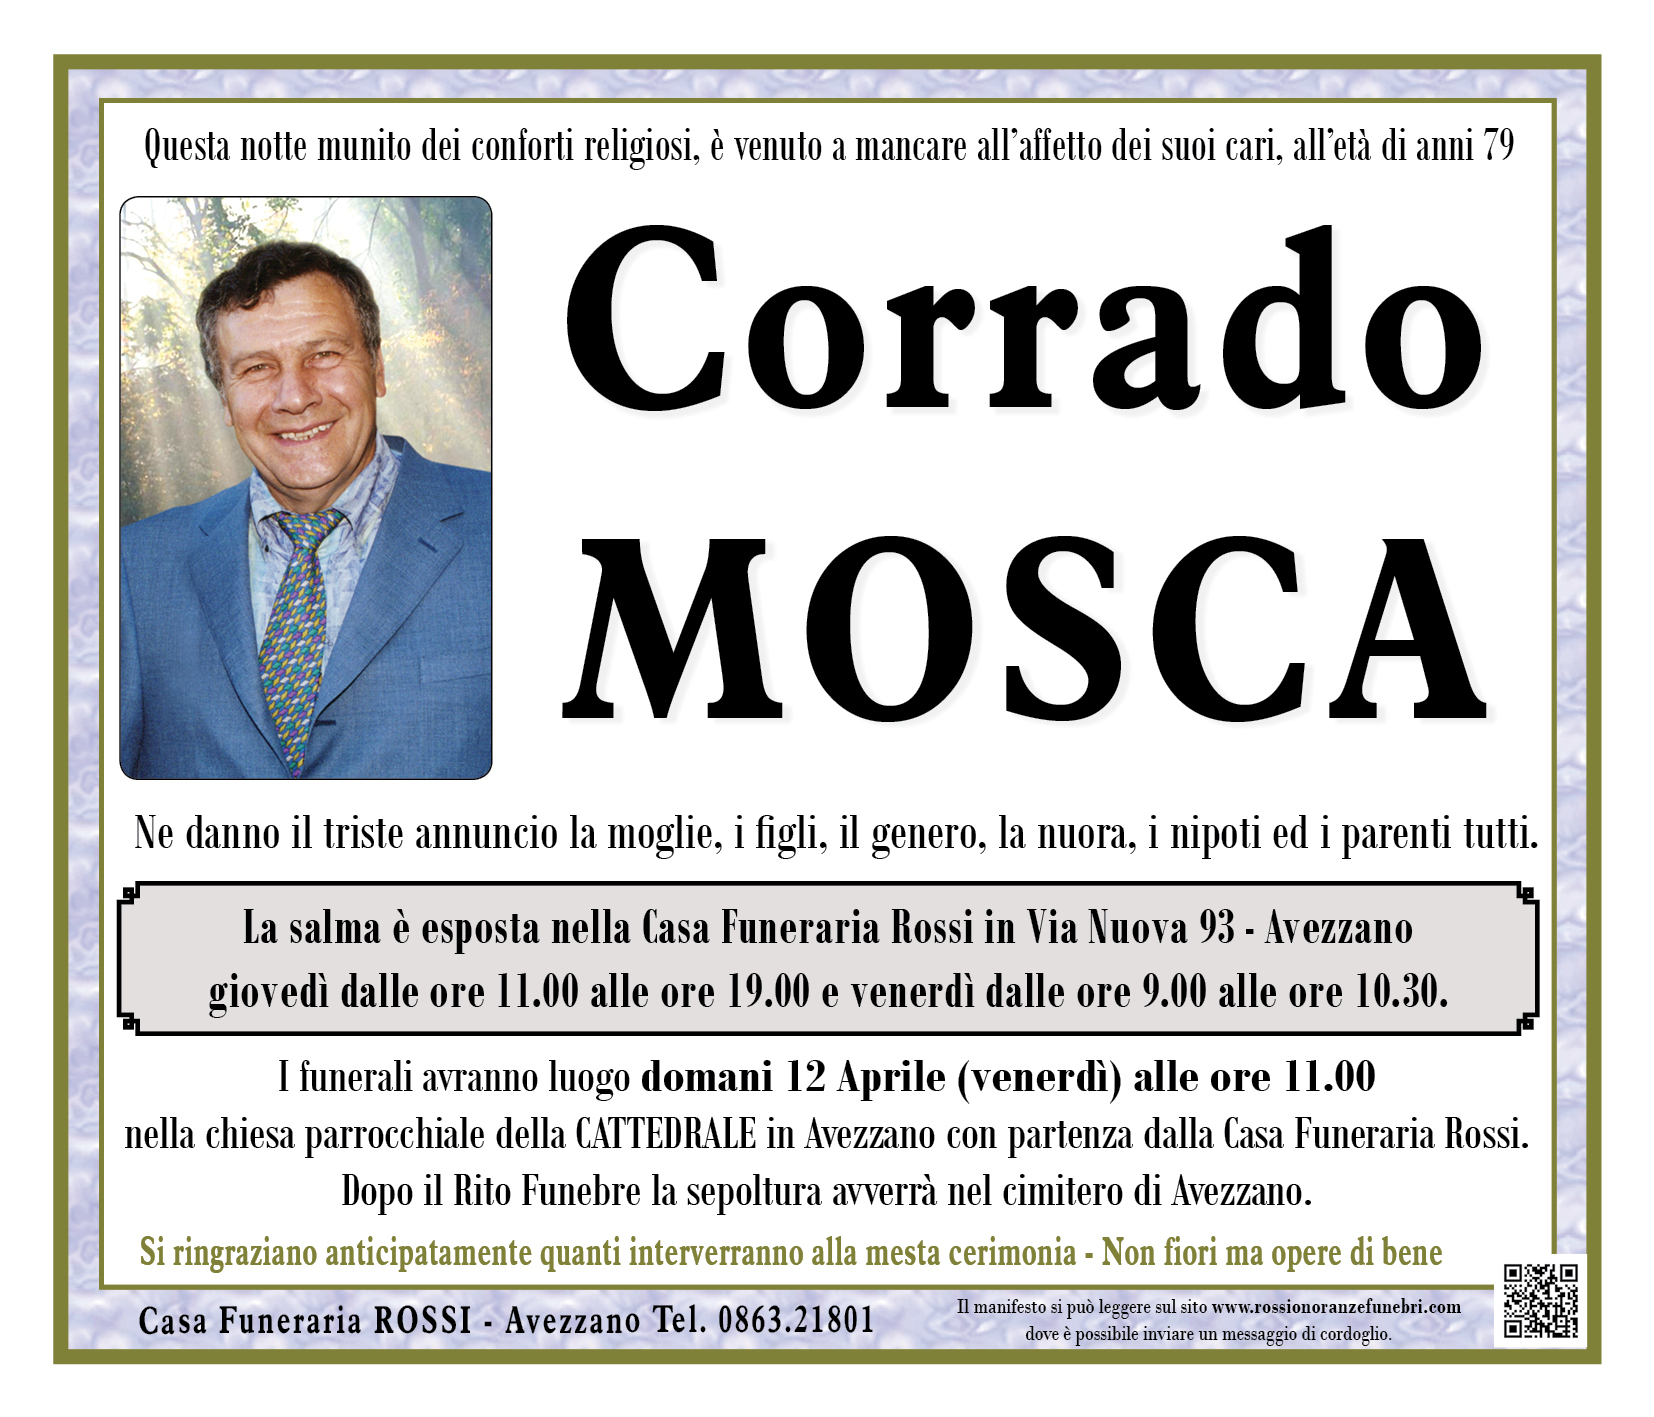 Corrado Mosca